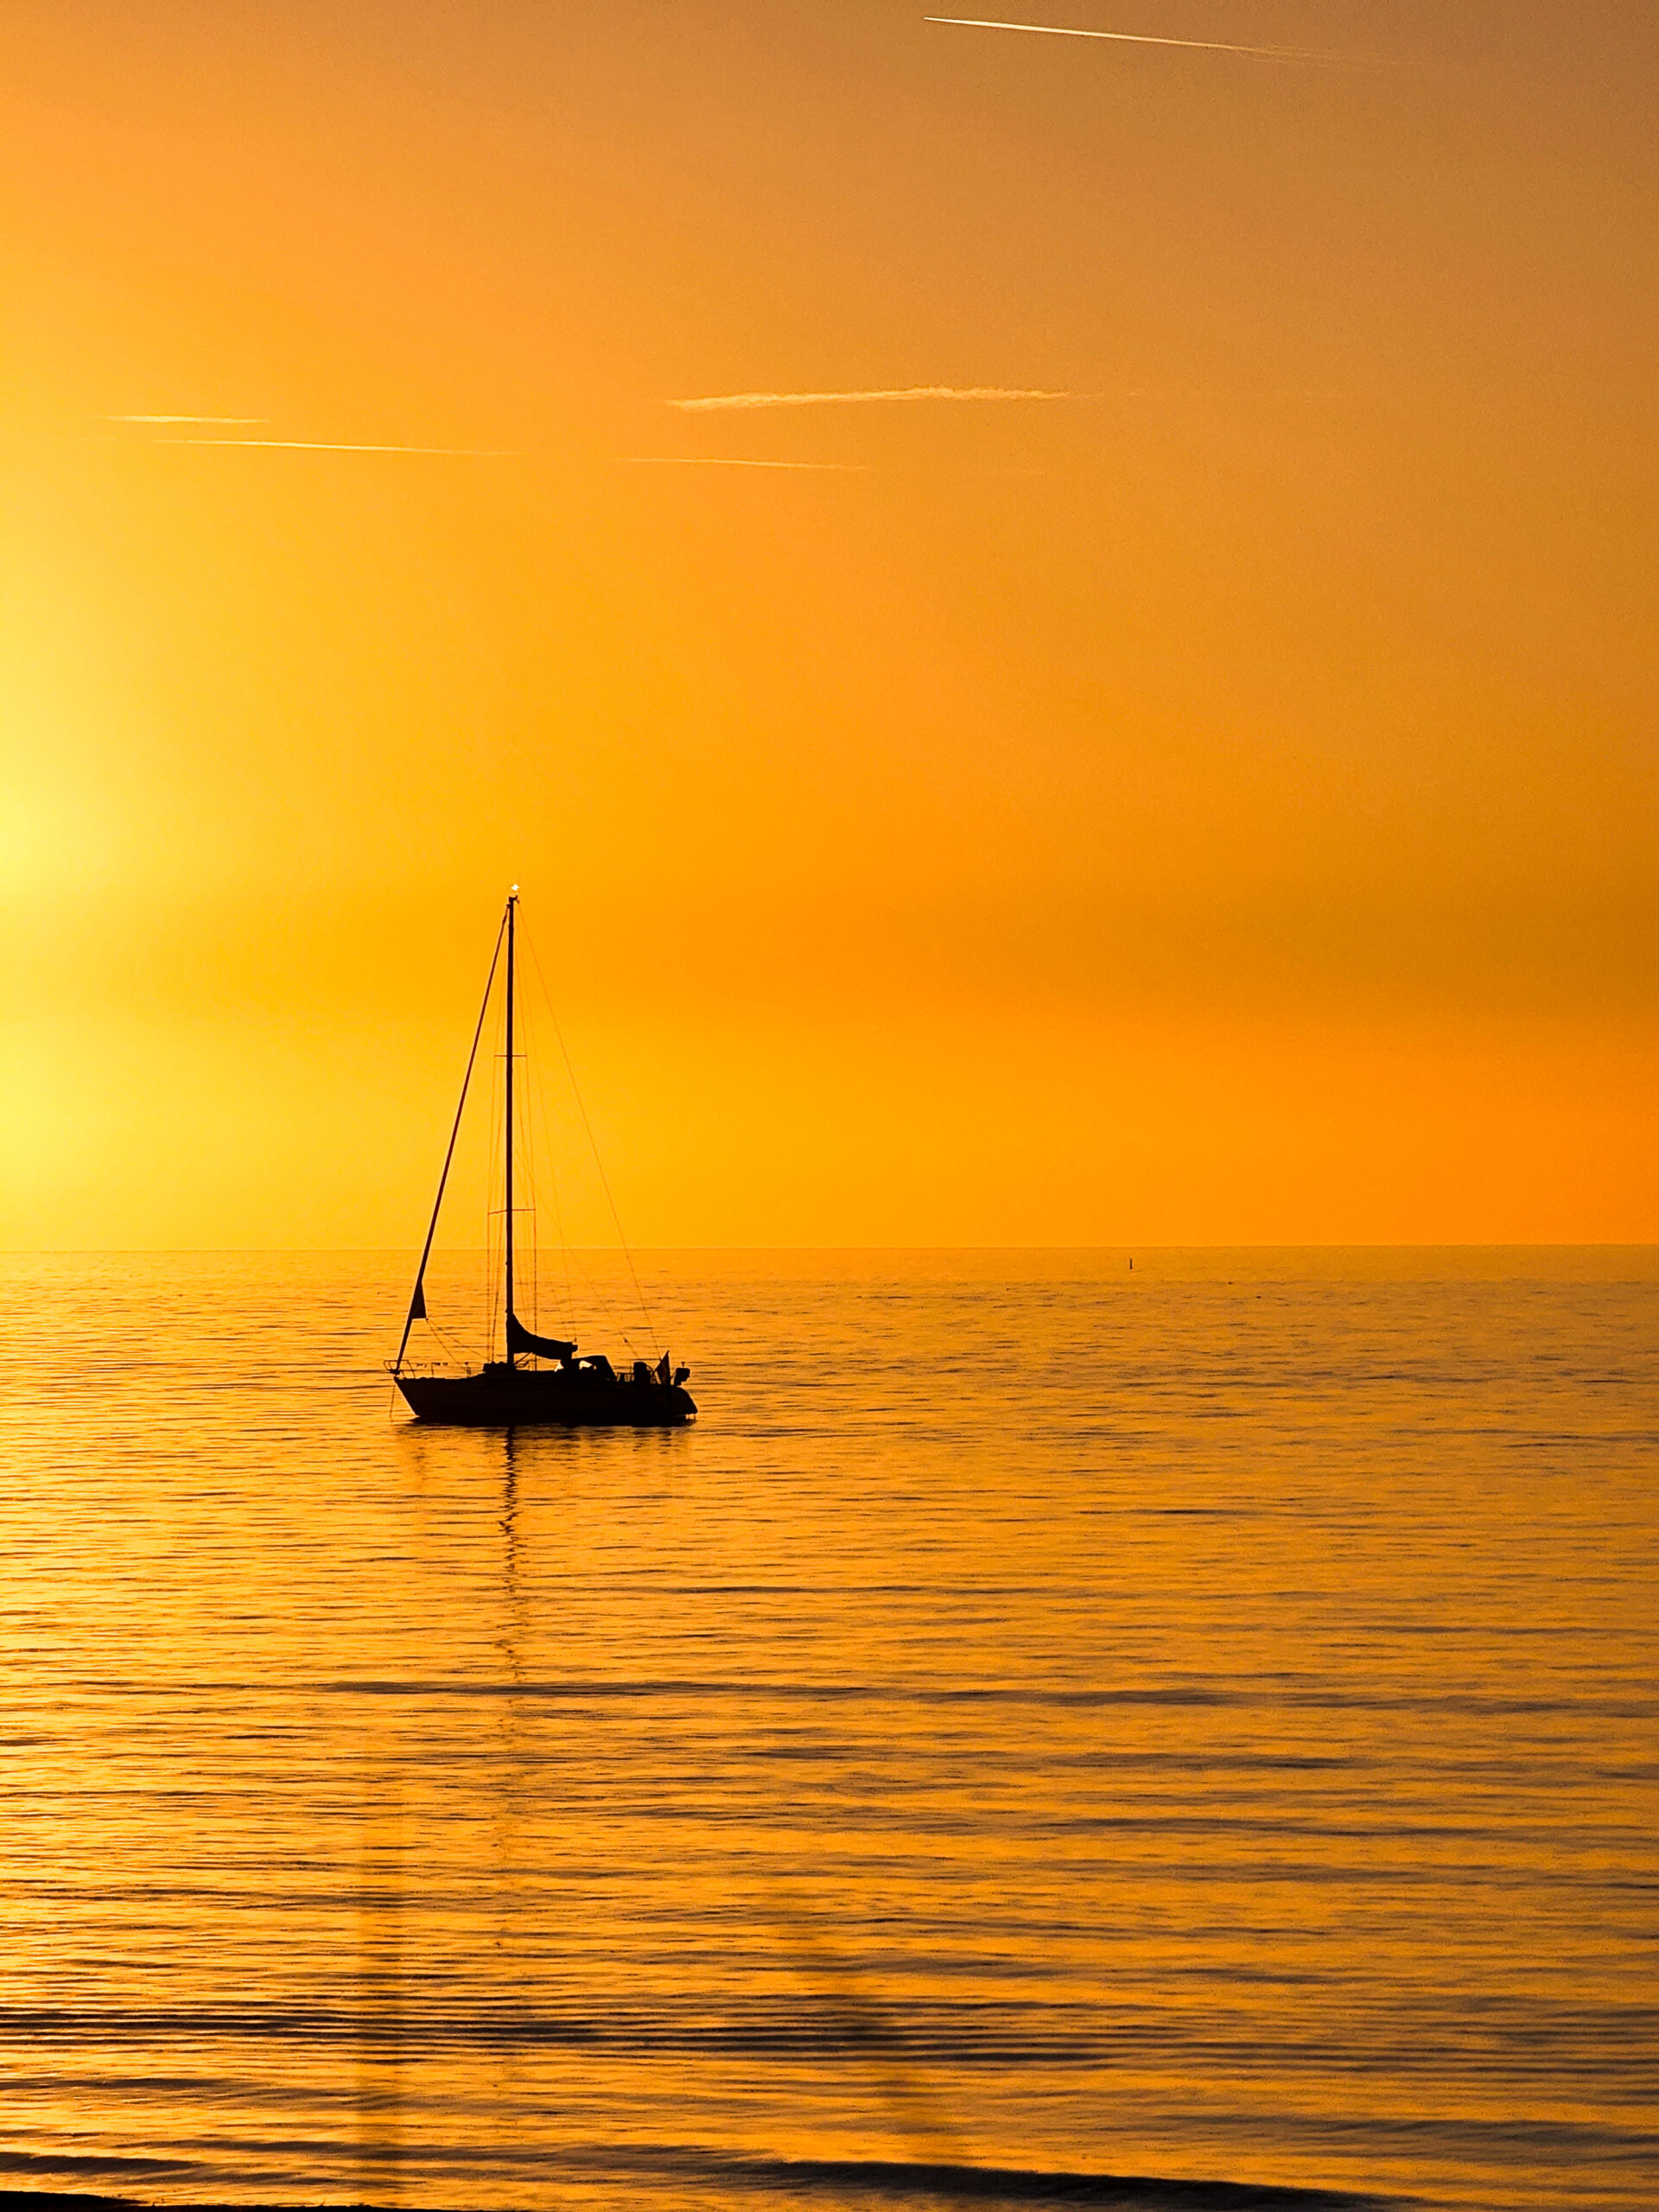 Sunset hornbaek strand copenhagen yacht